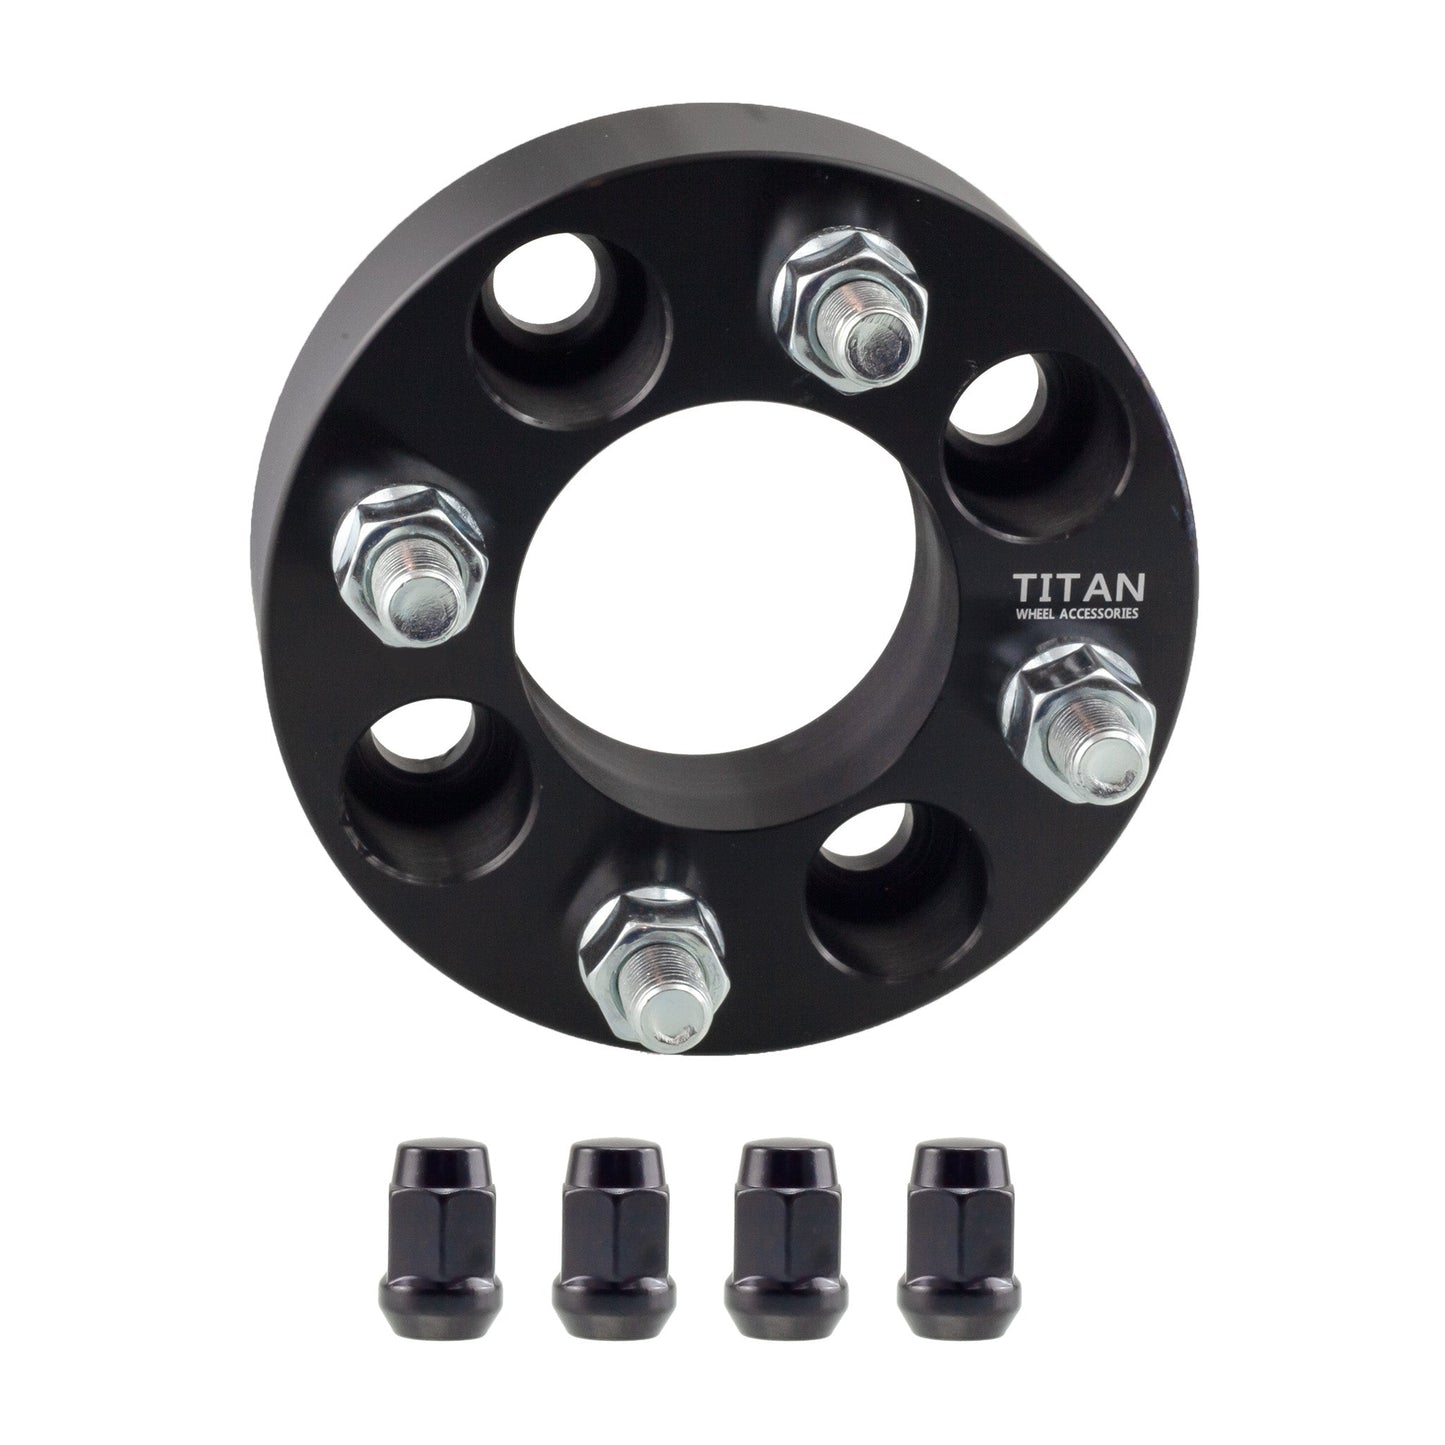 25mm (1") Titan Wheel Spacers for Mazda Miata Scion xB Toyota MR2 | 4x100 | 54.1 Hubcentric | Titan Wheel Accessories